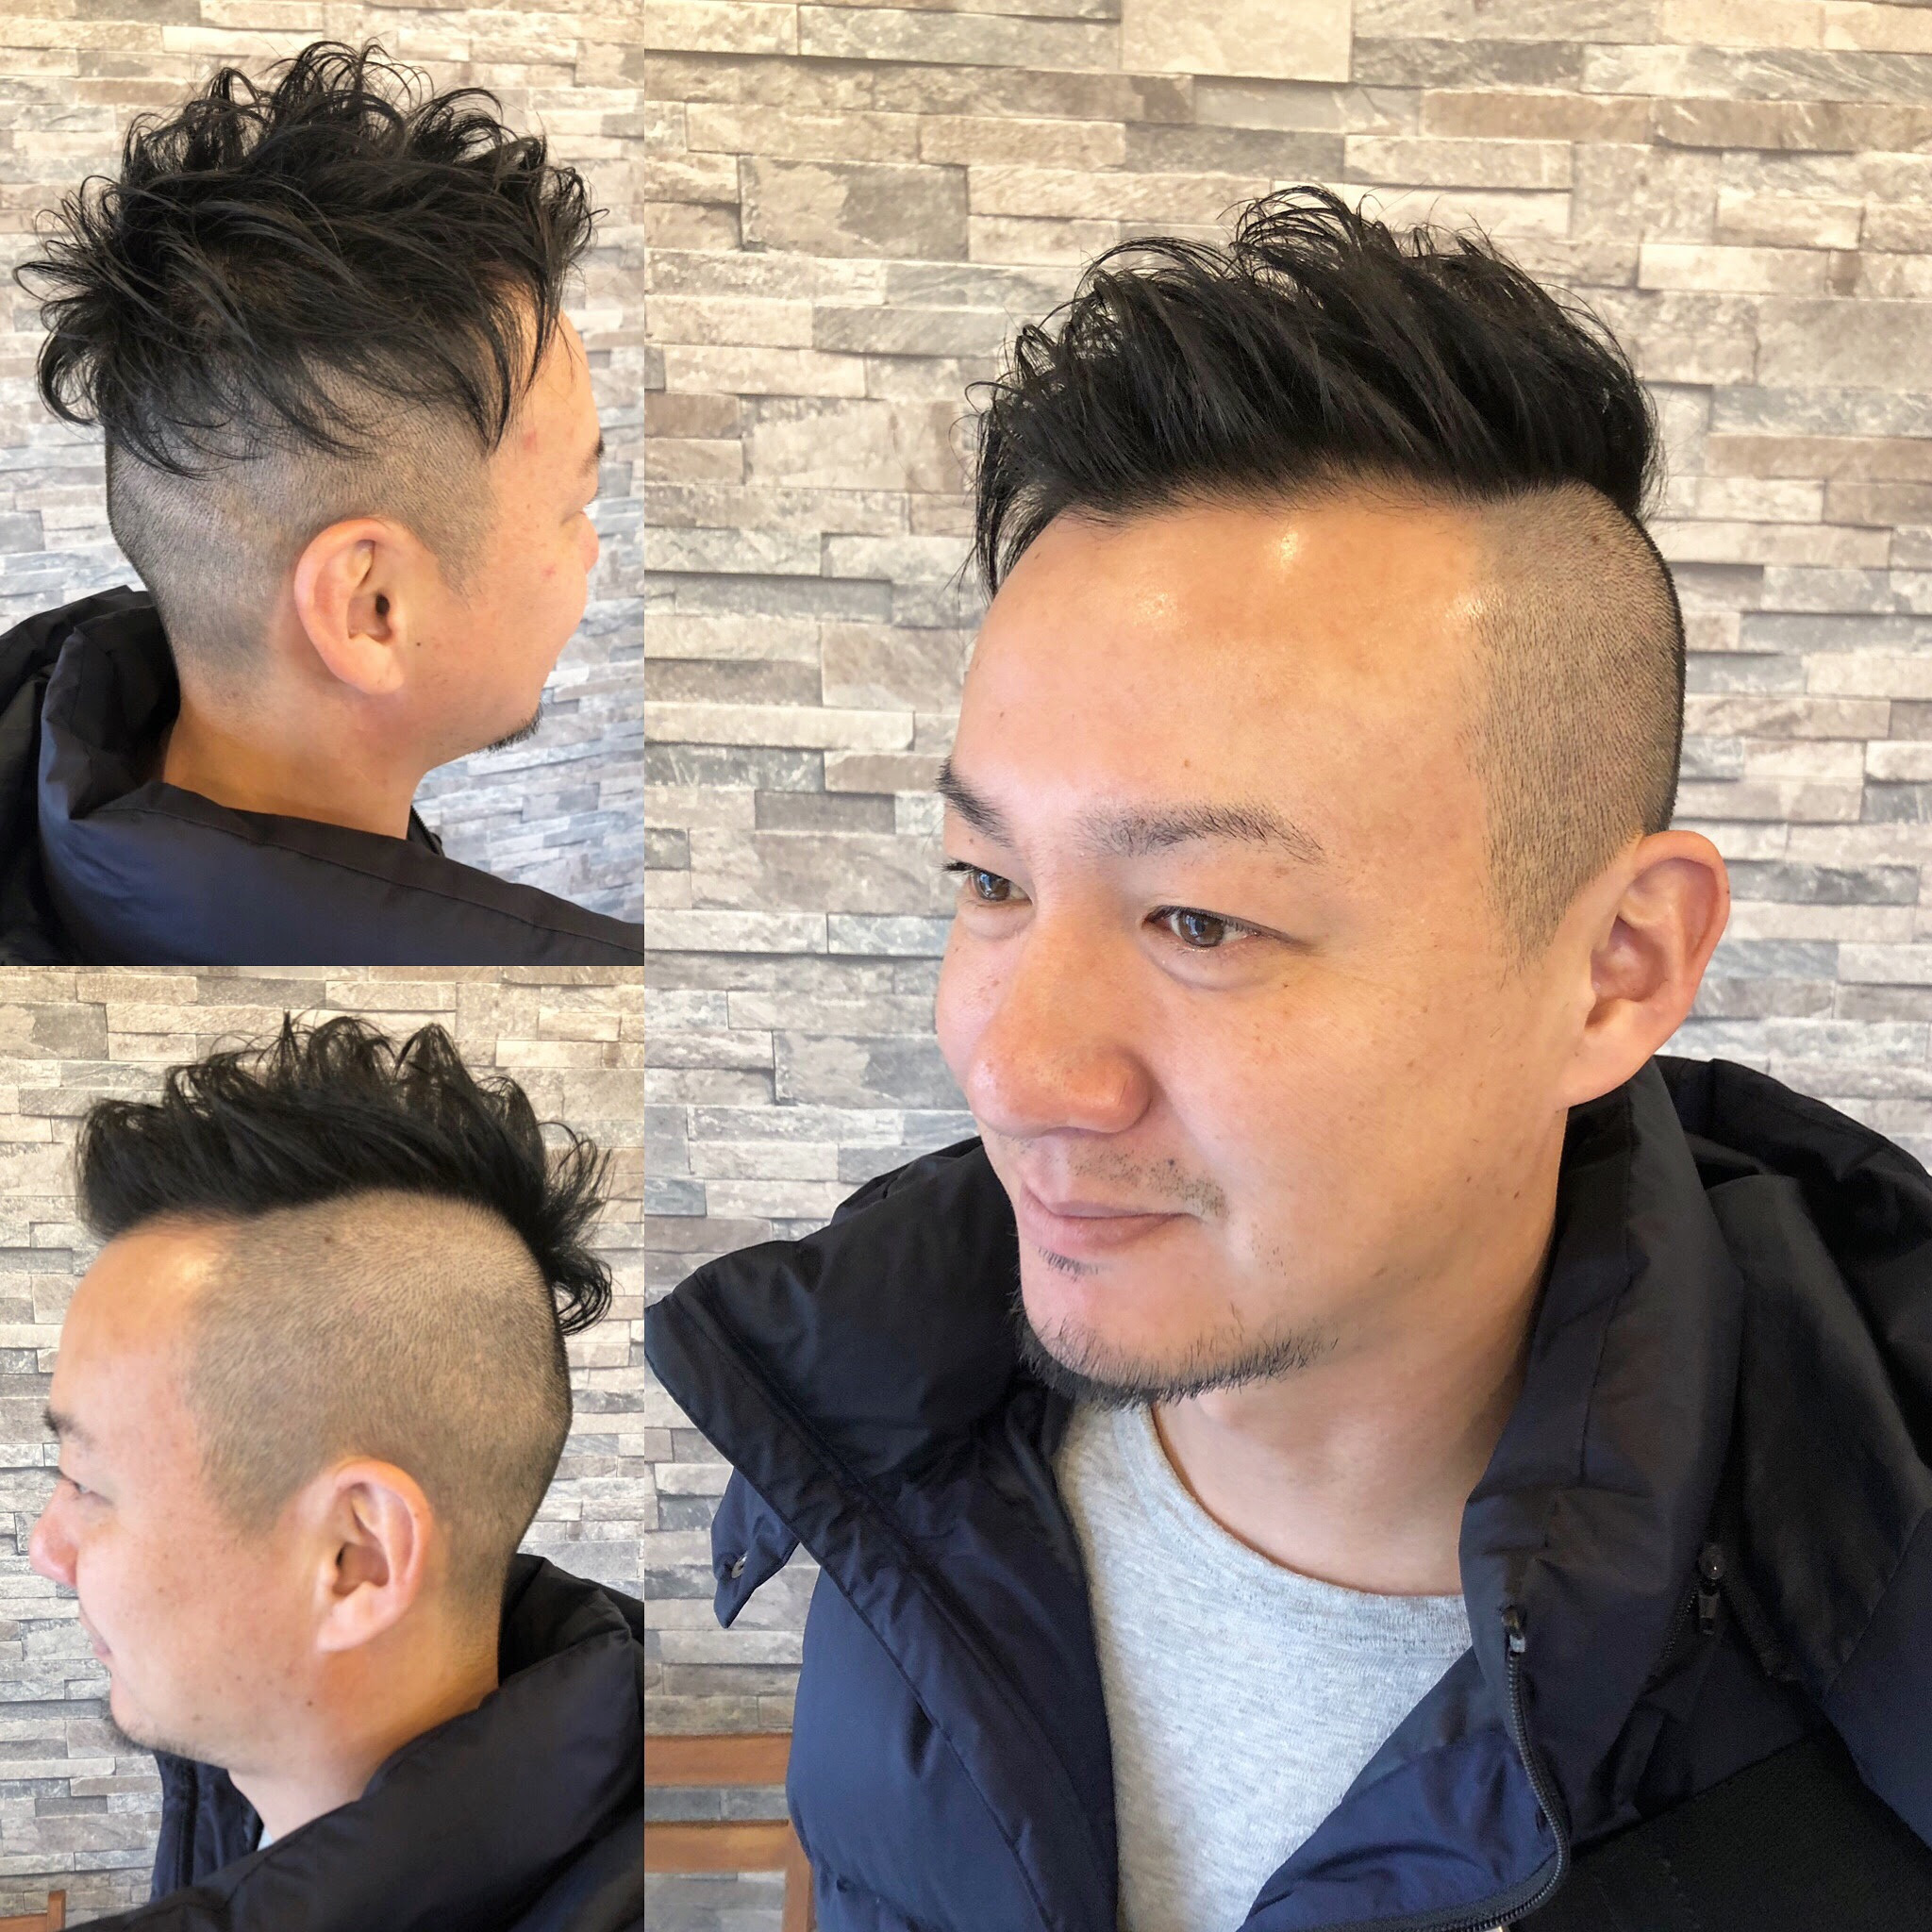 75+ アラフォー 男 髪型 ヘアスタイルブログ